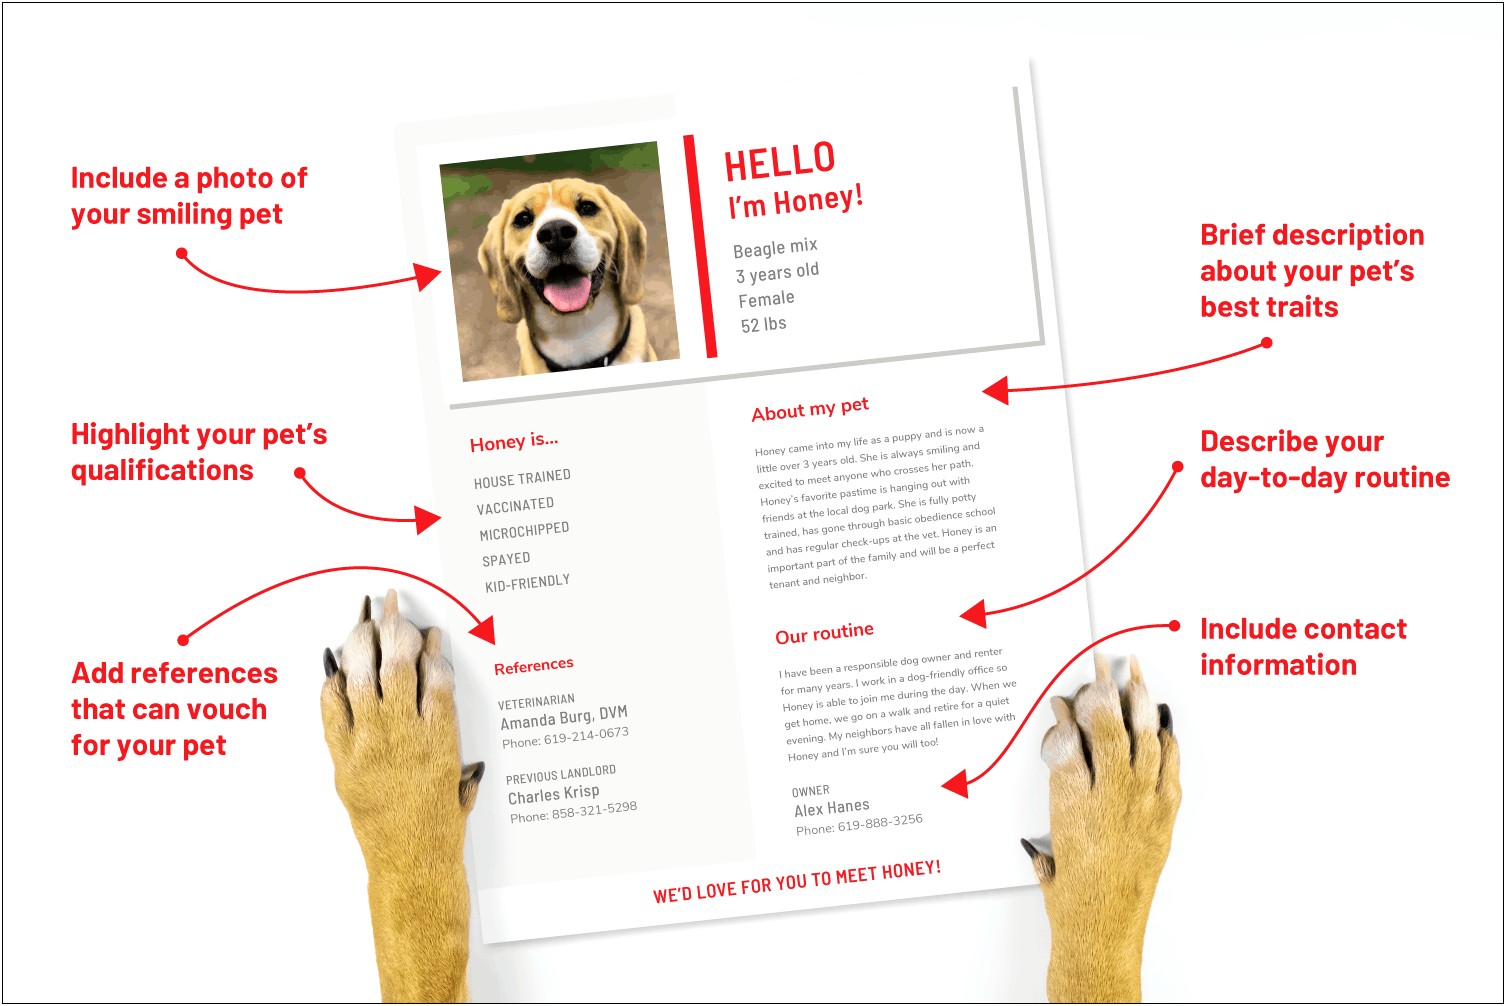 Owner Dog Walker Job Description For Resume